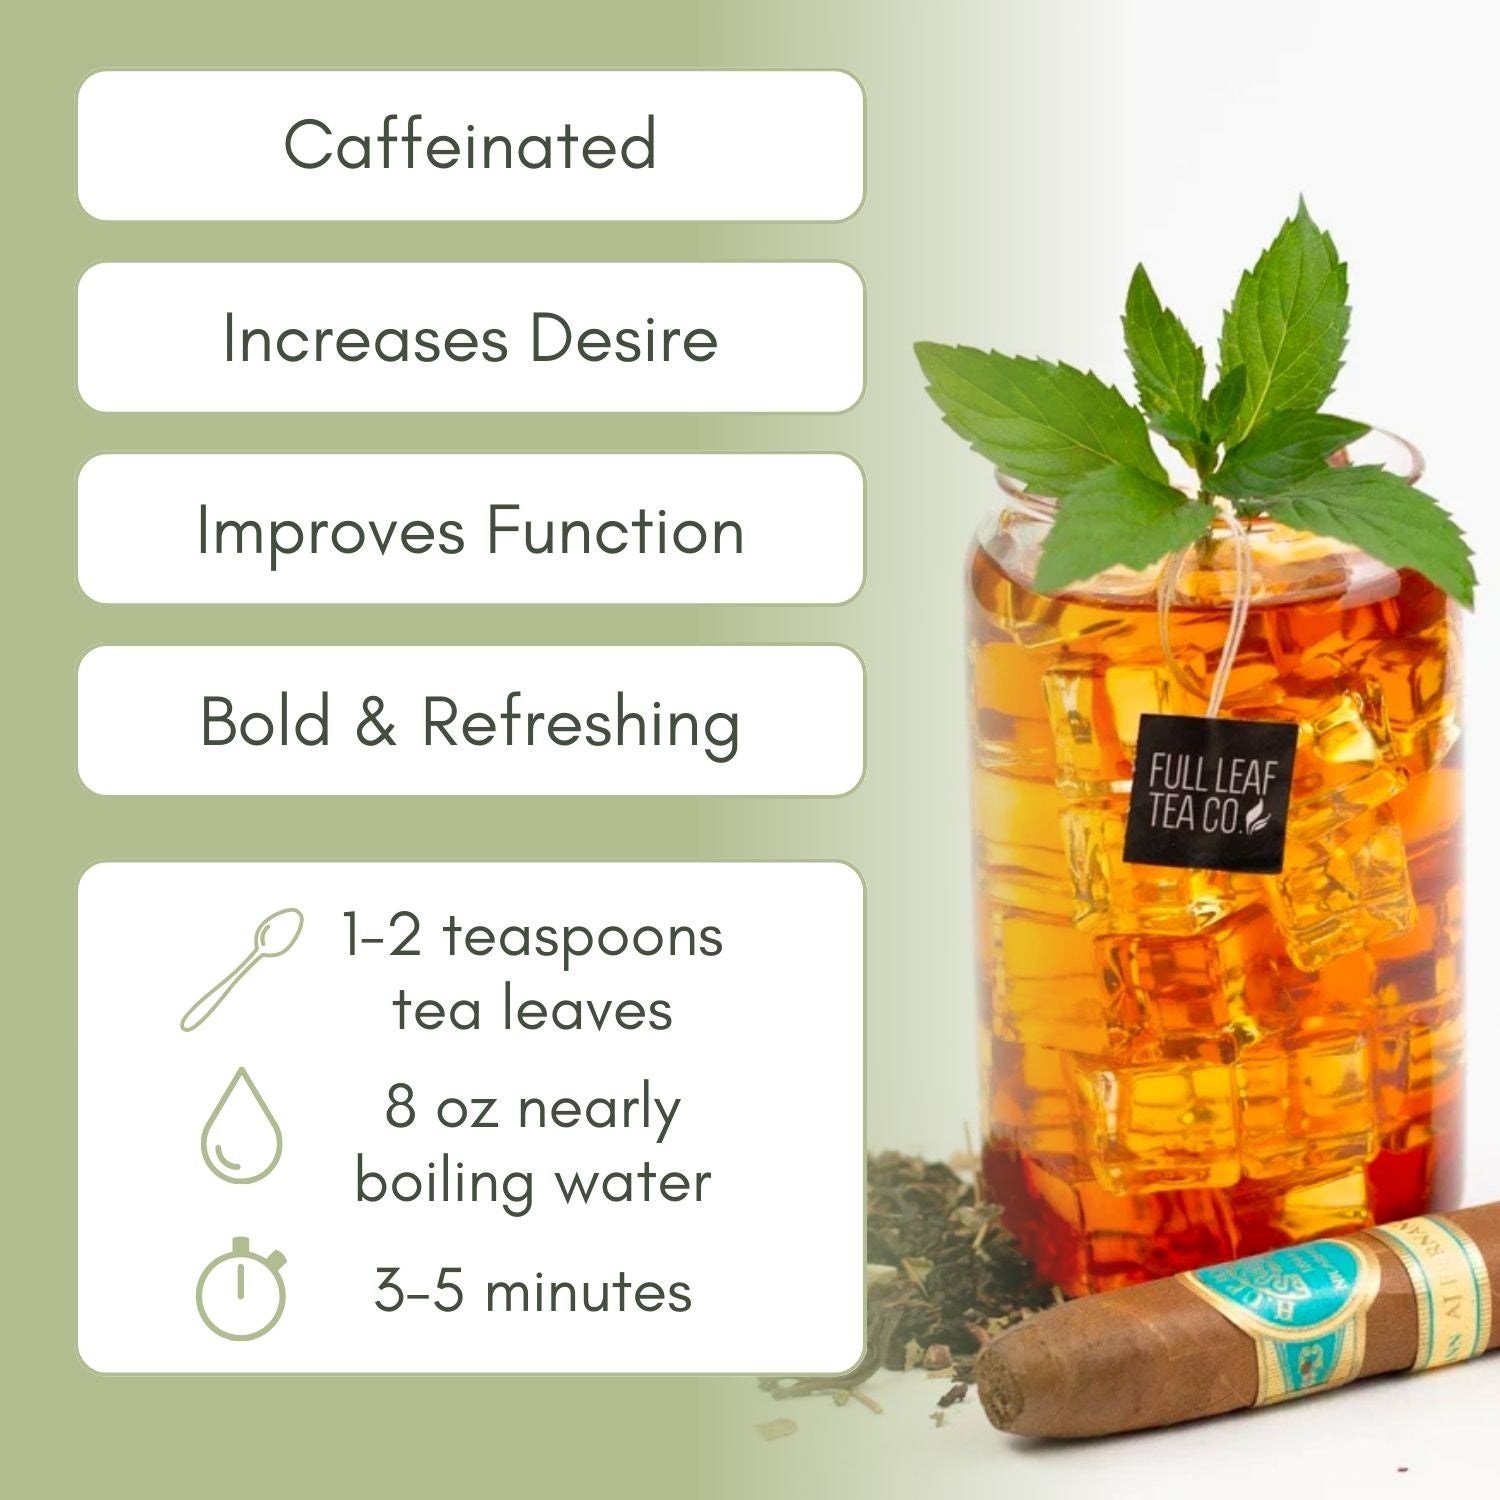 pure leaf iced tea caffeine content